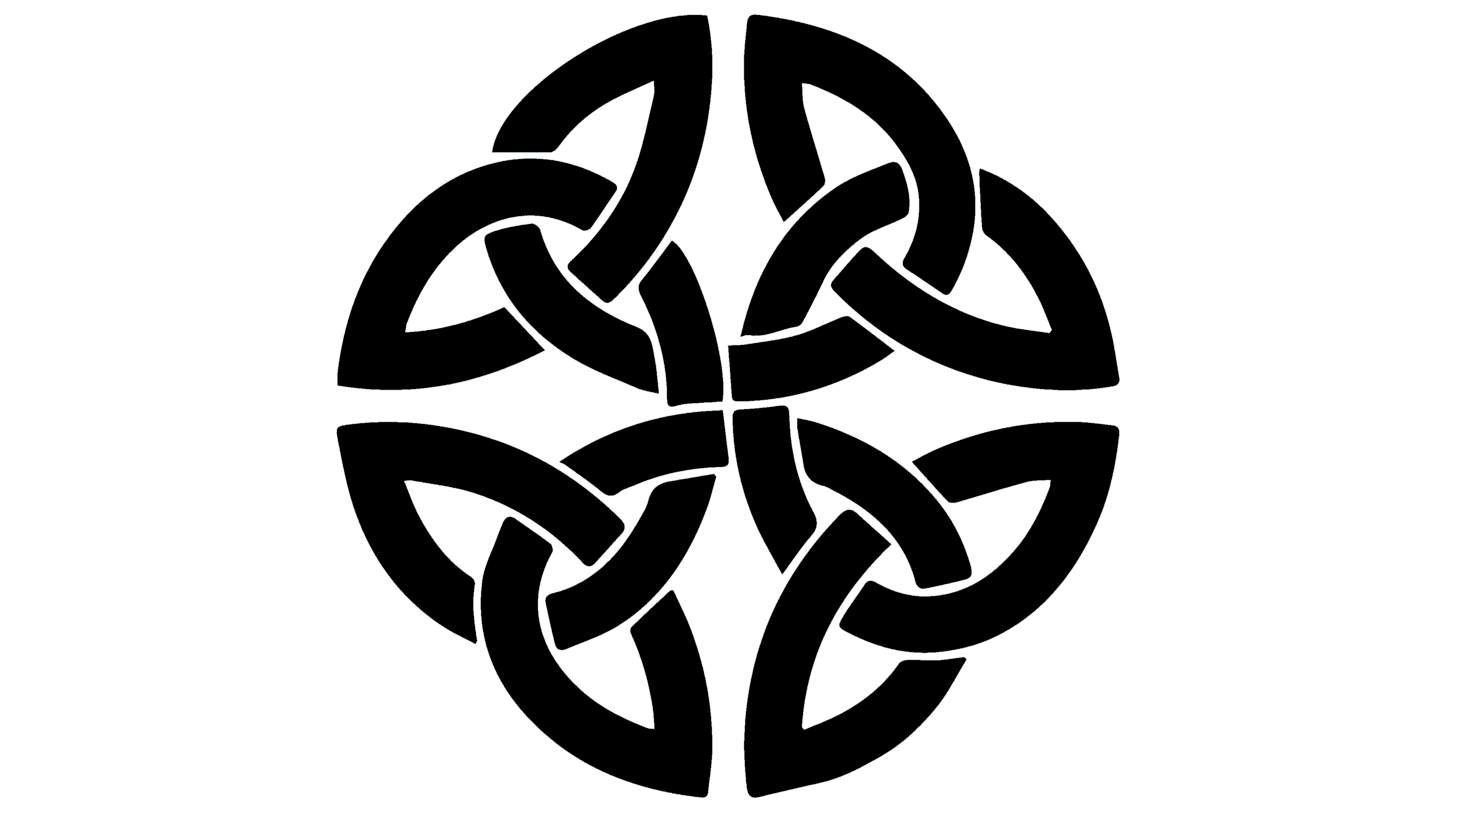 Celtic knot logo